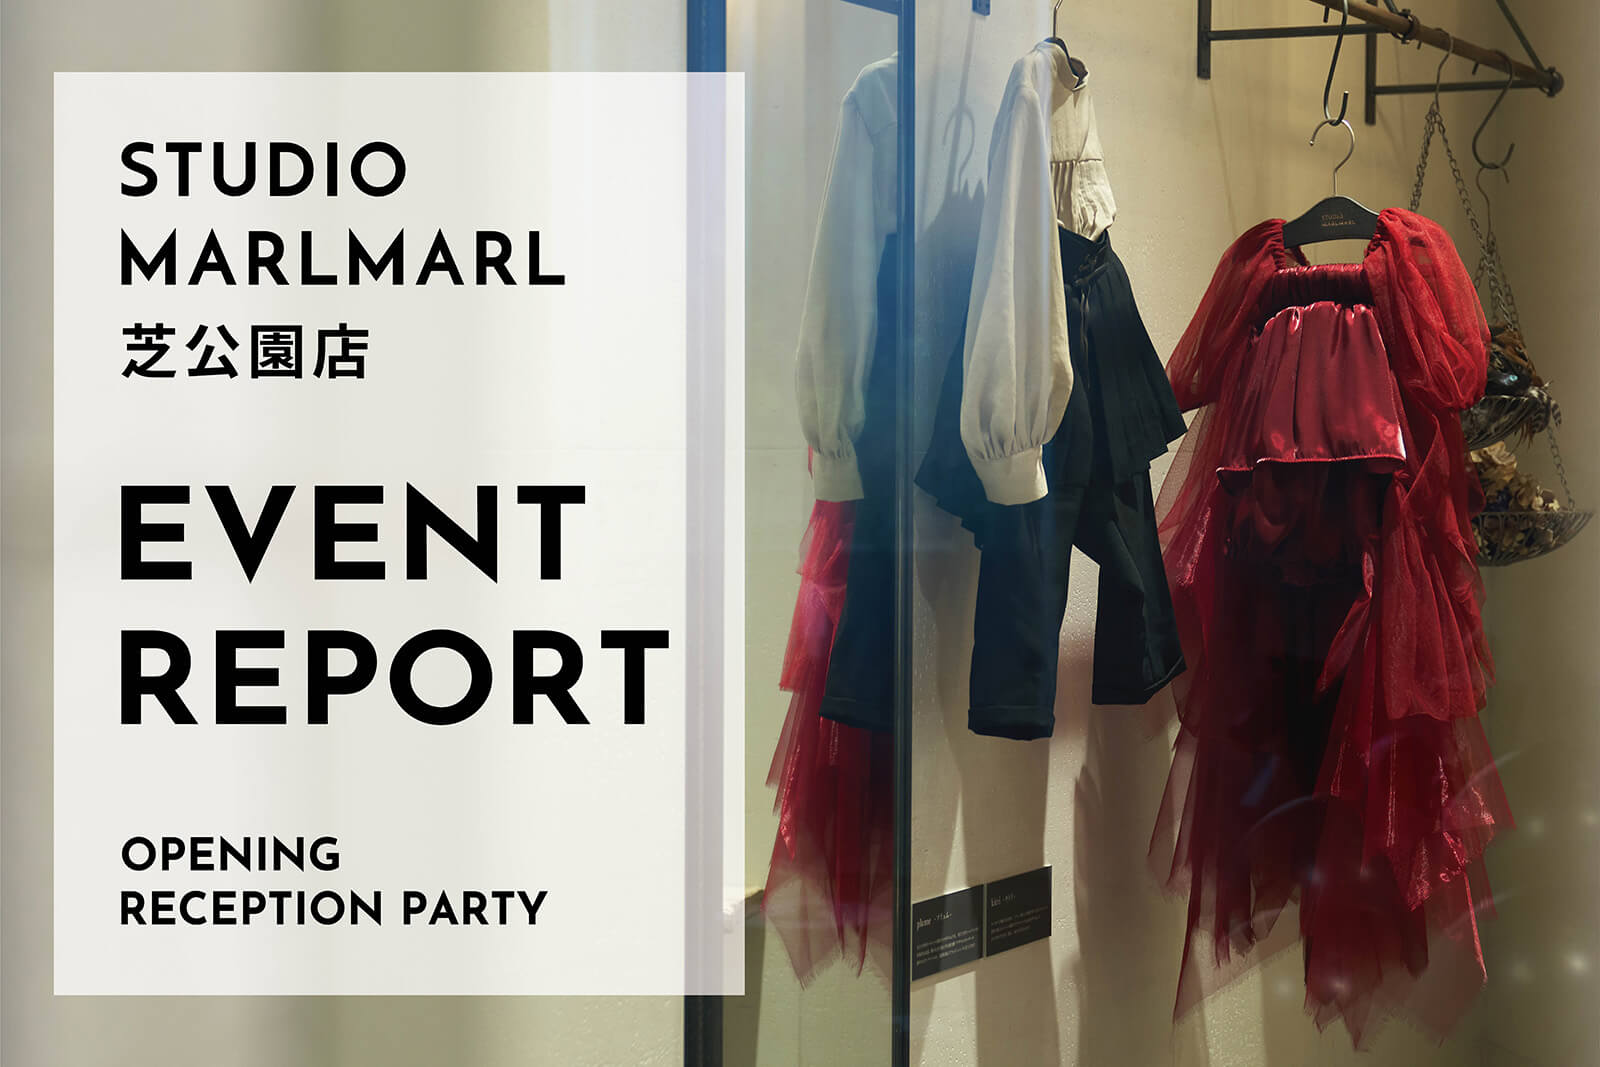 【イベントレポート】STUDIO MARLMARL芝公園店OPENING RECEPTION PARTY
